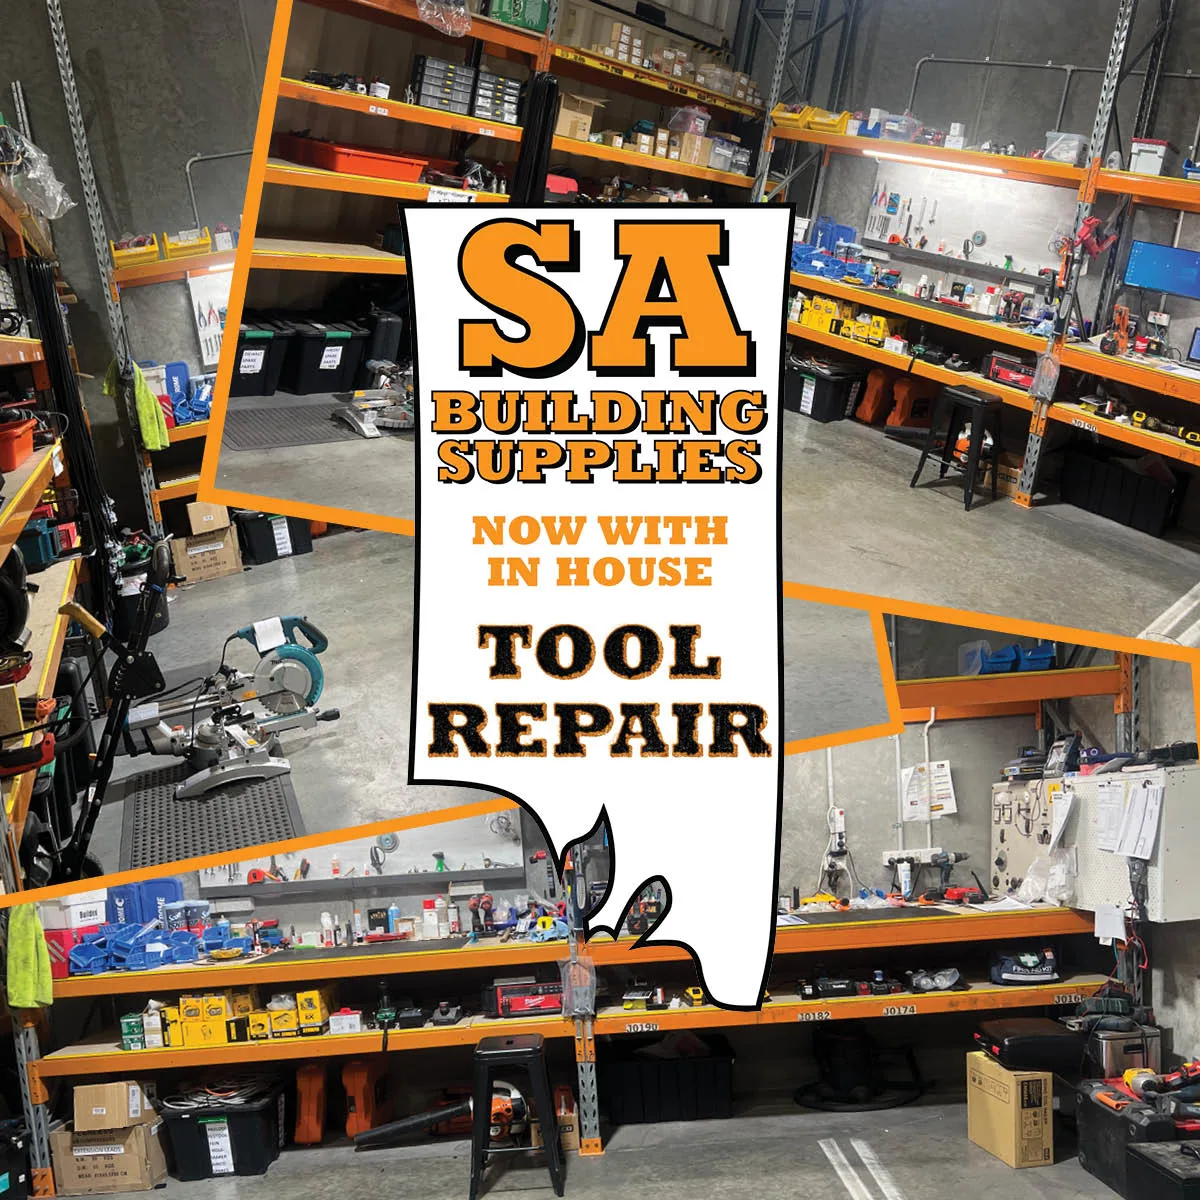 Tool Repairs at SA Building